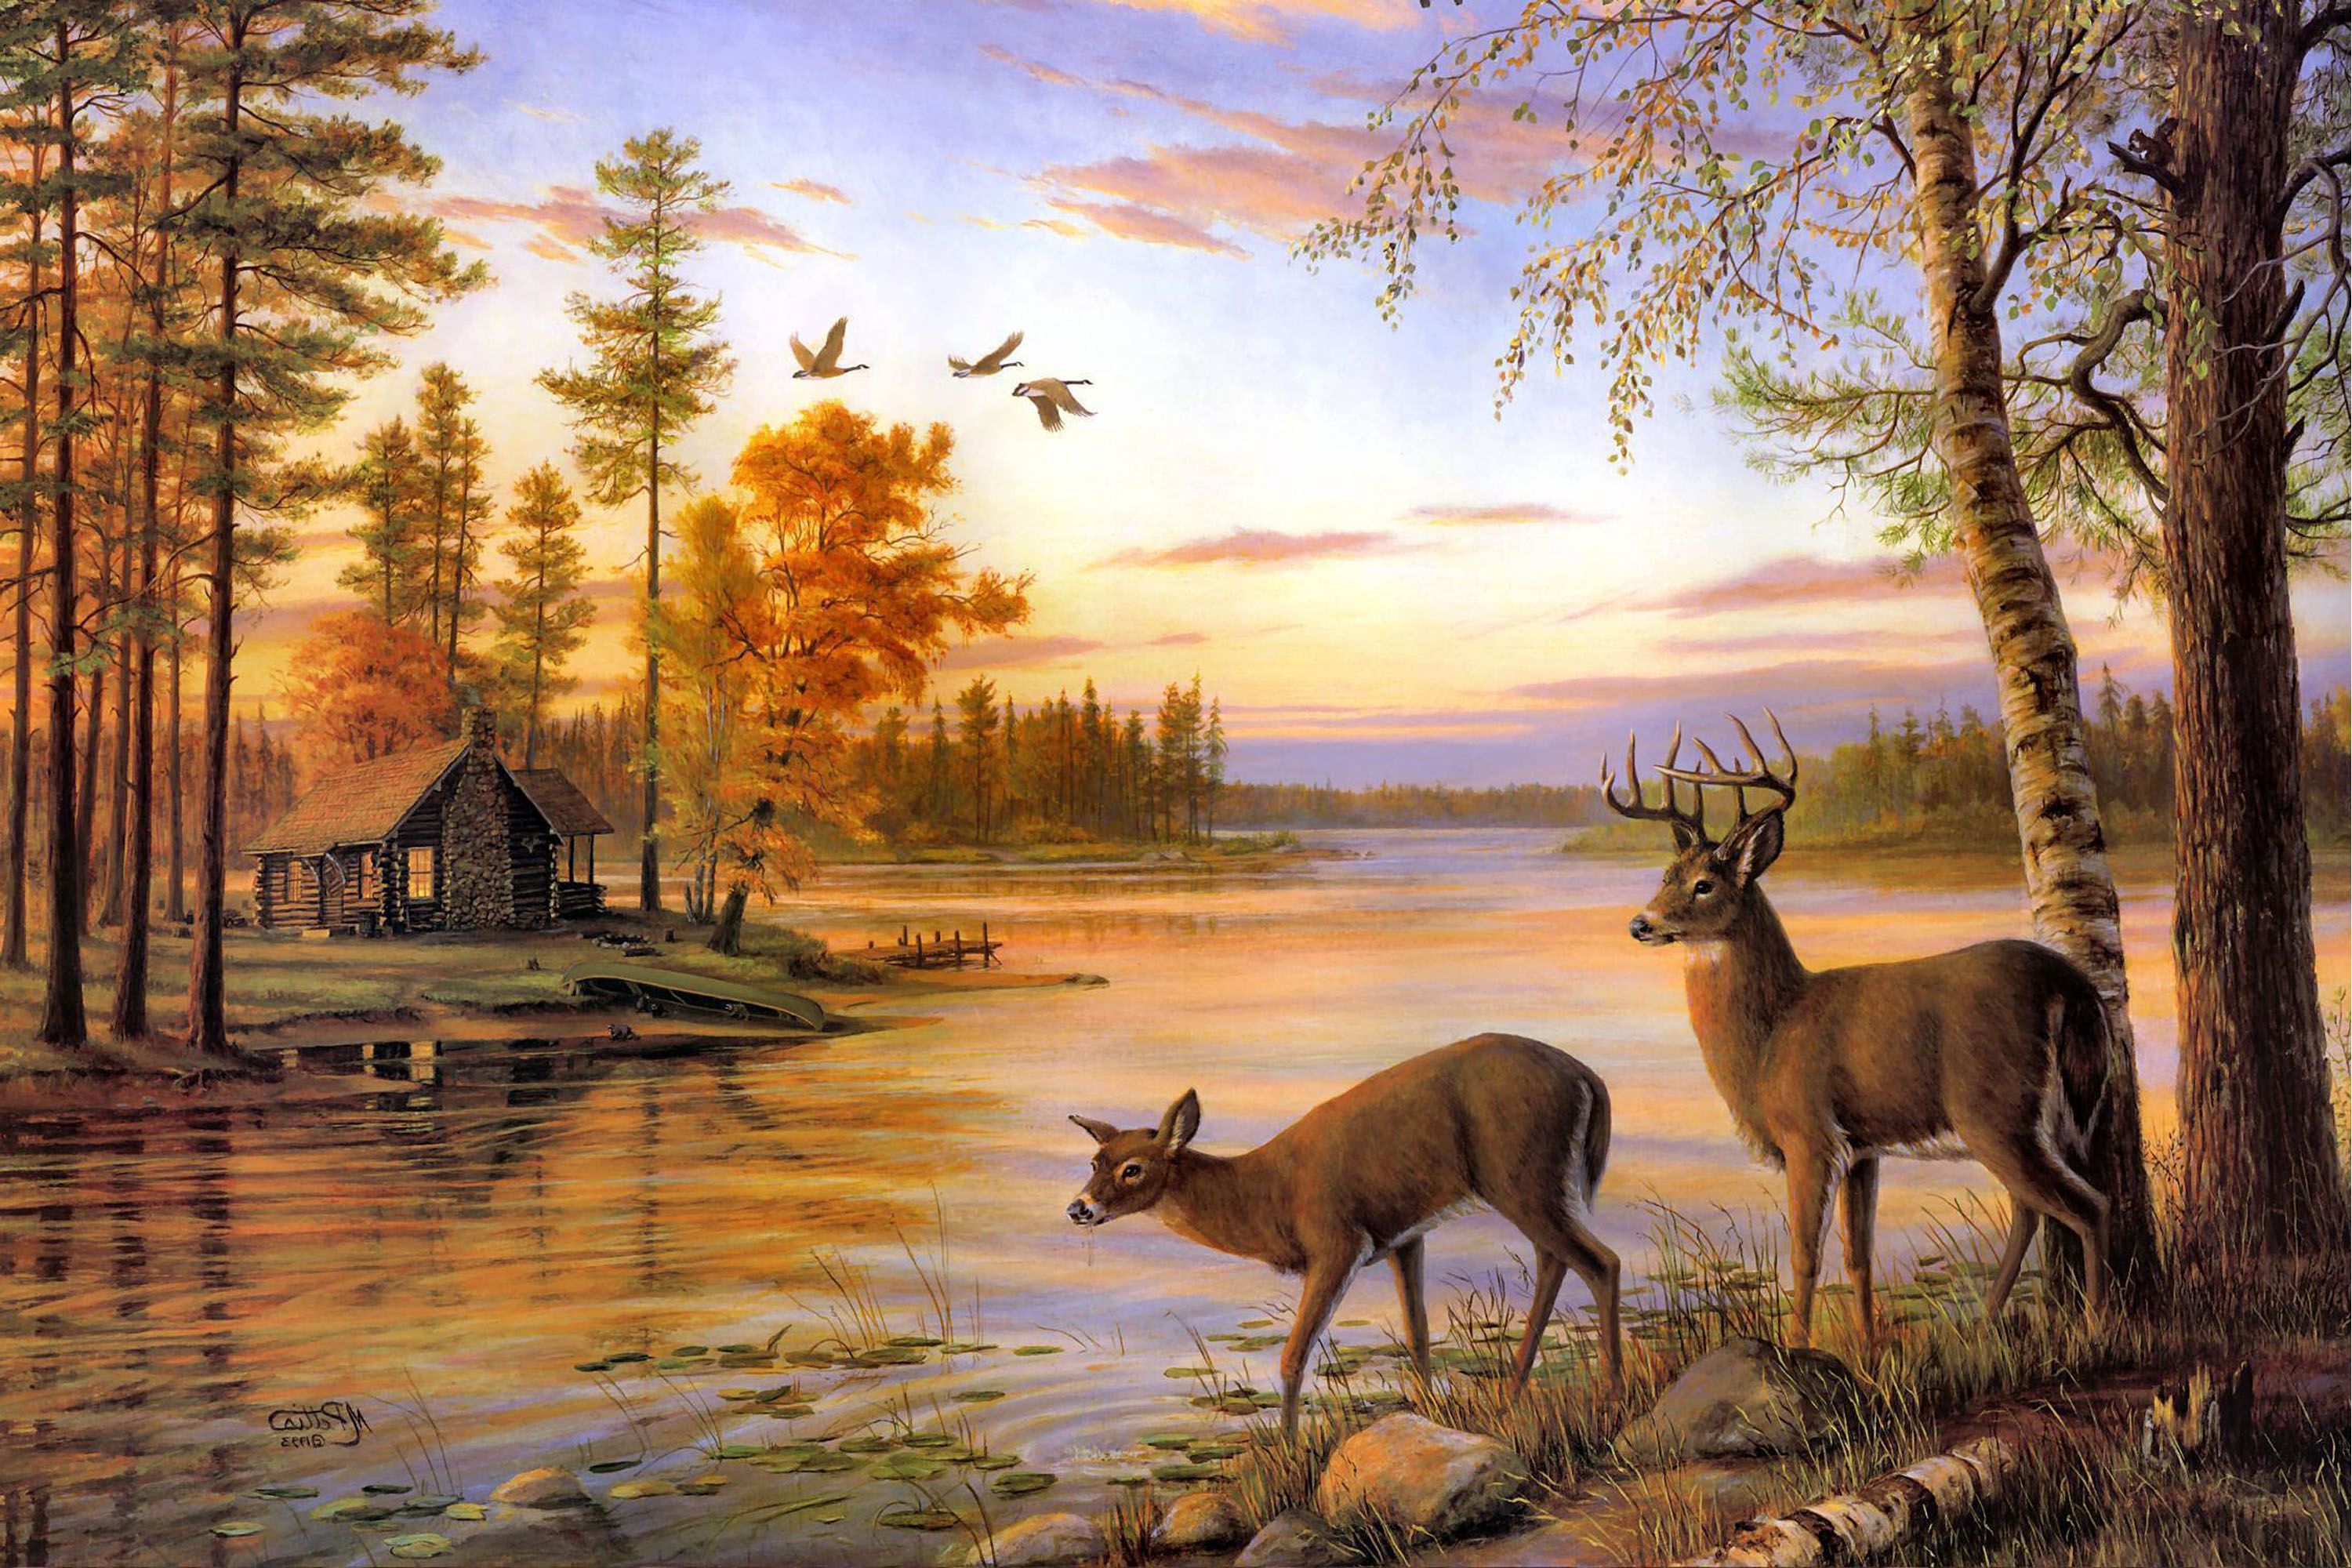 Two Deer Drink Water On The River When Sunset. Deer painting, Deer wallpaper, Deer picture